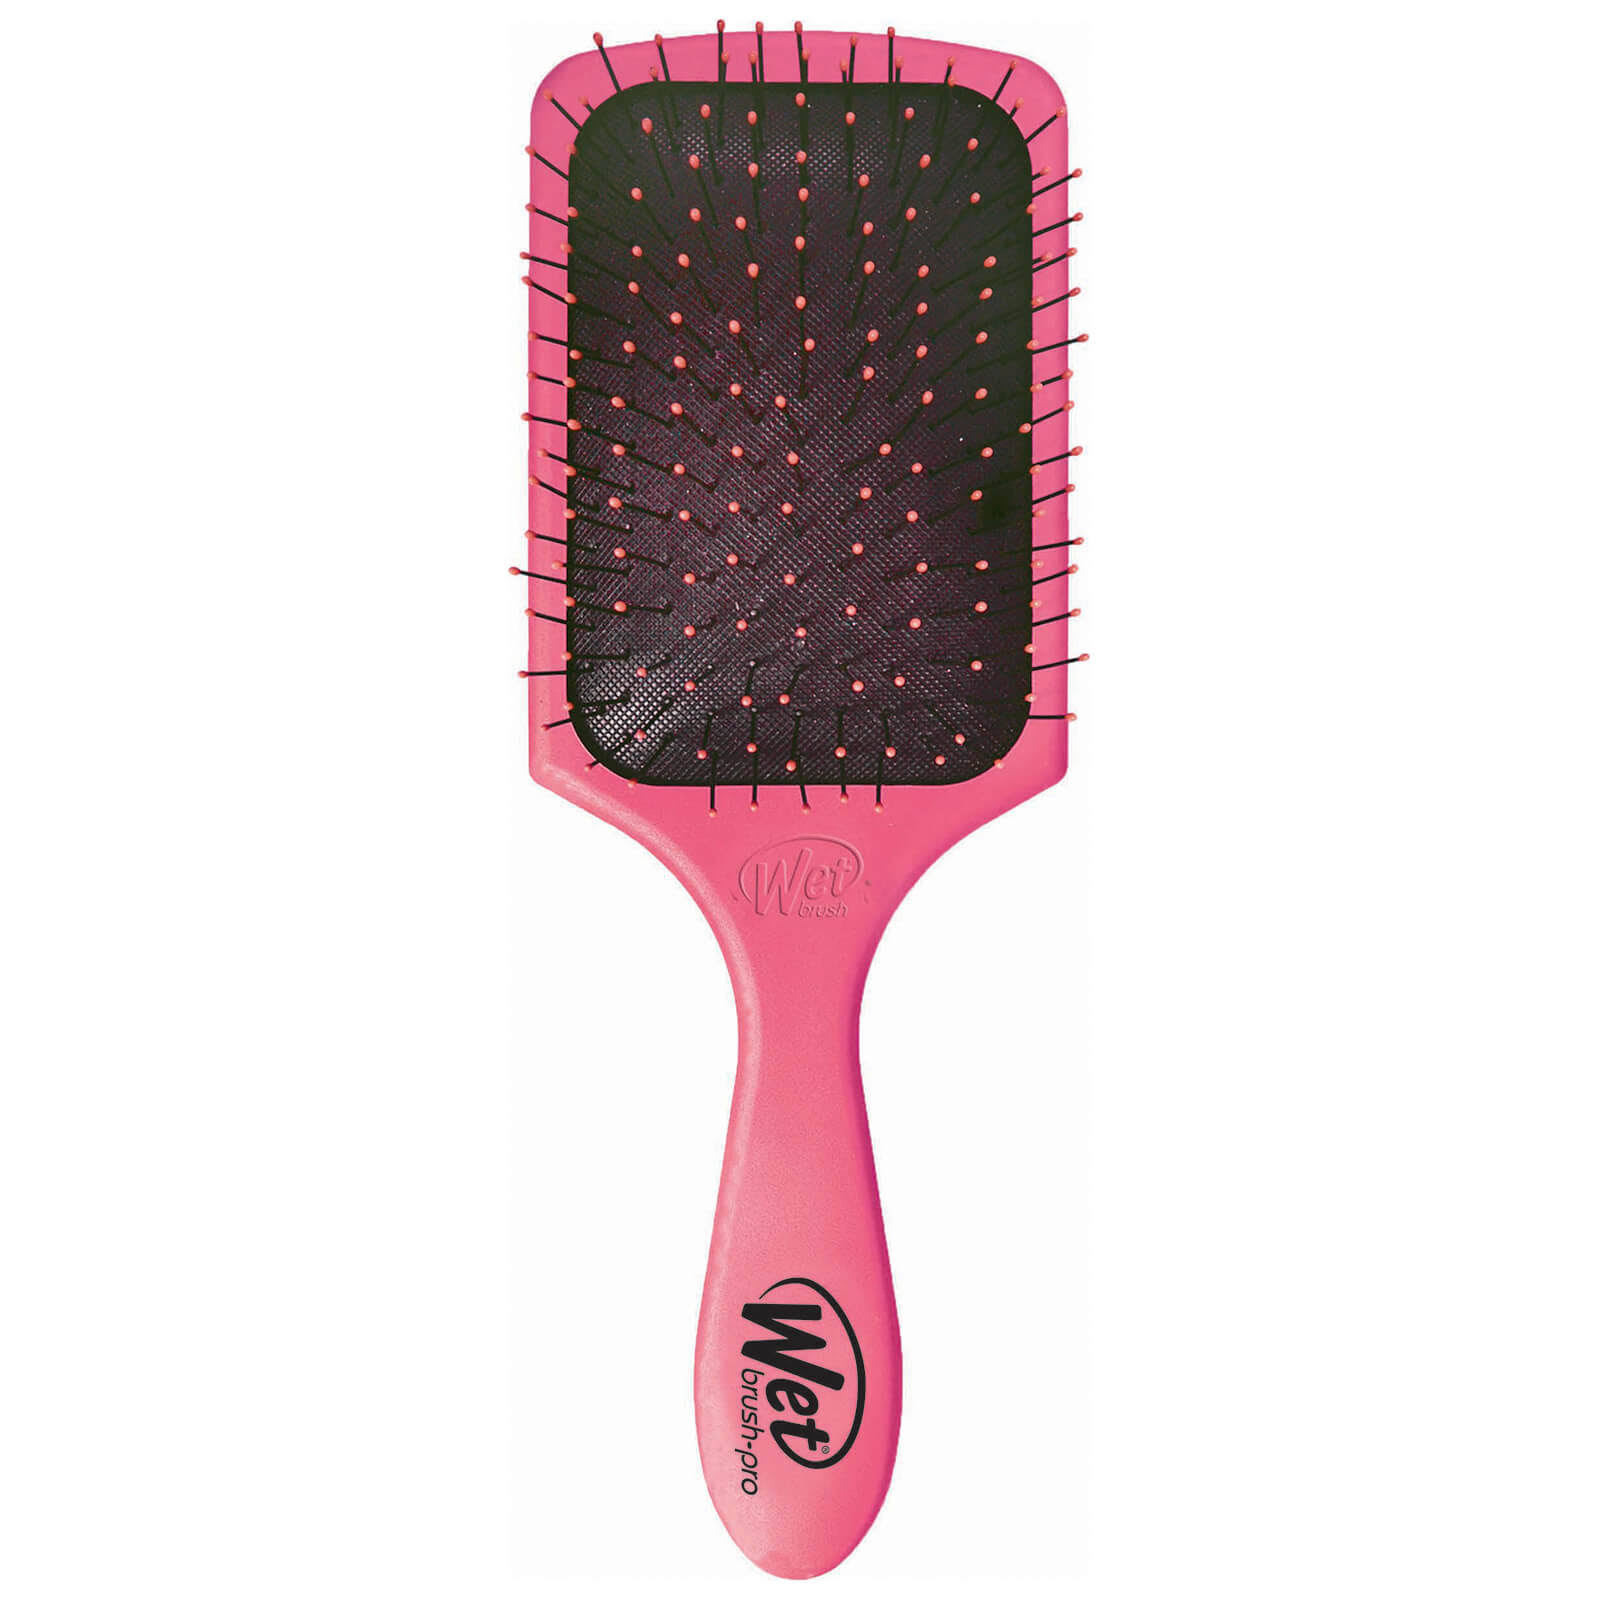 Wet Brush Paddle Detangler, Pink